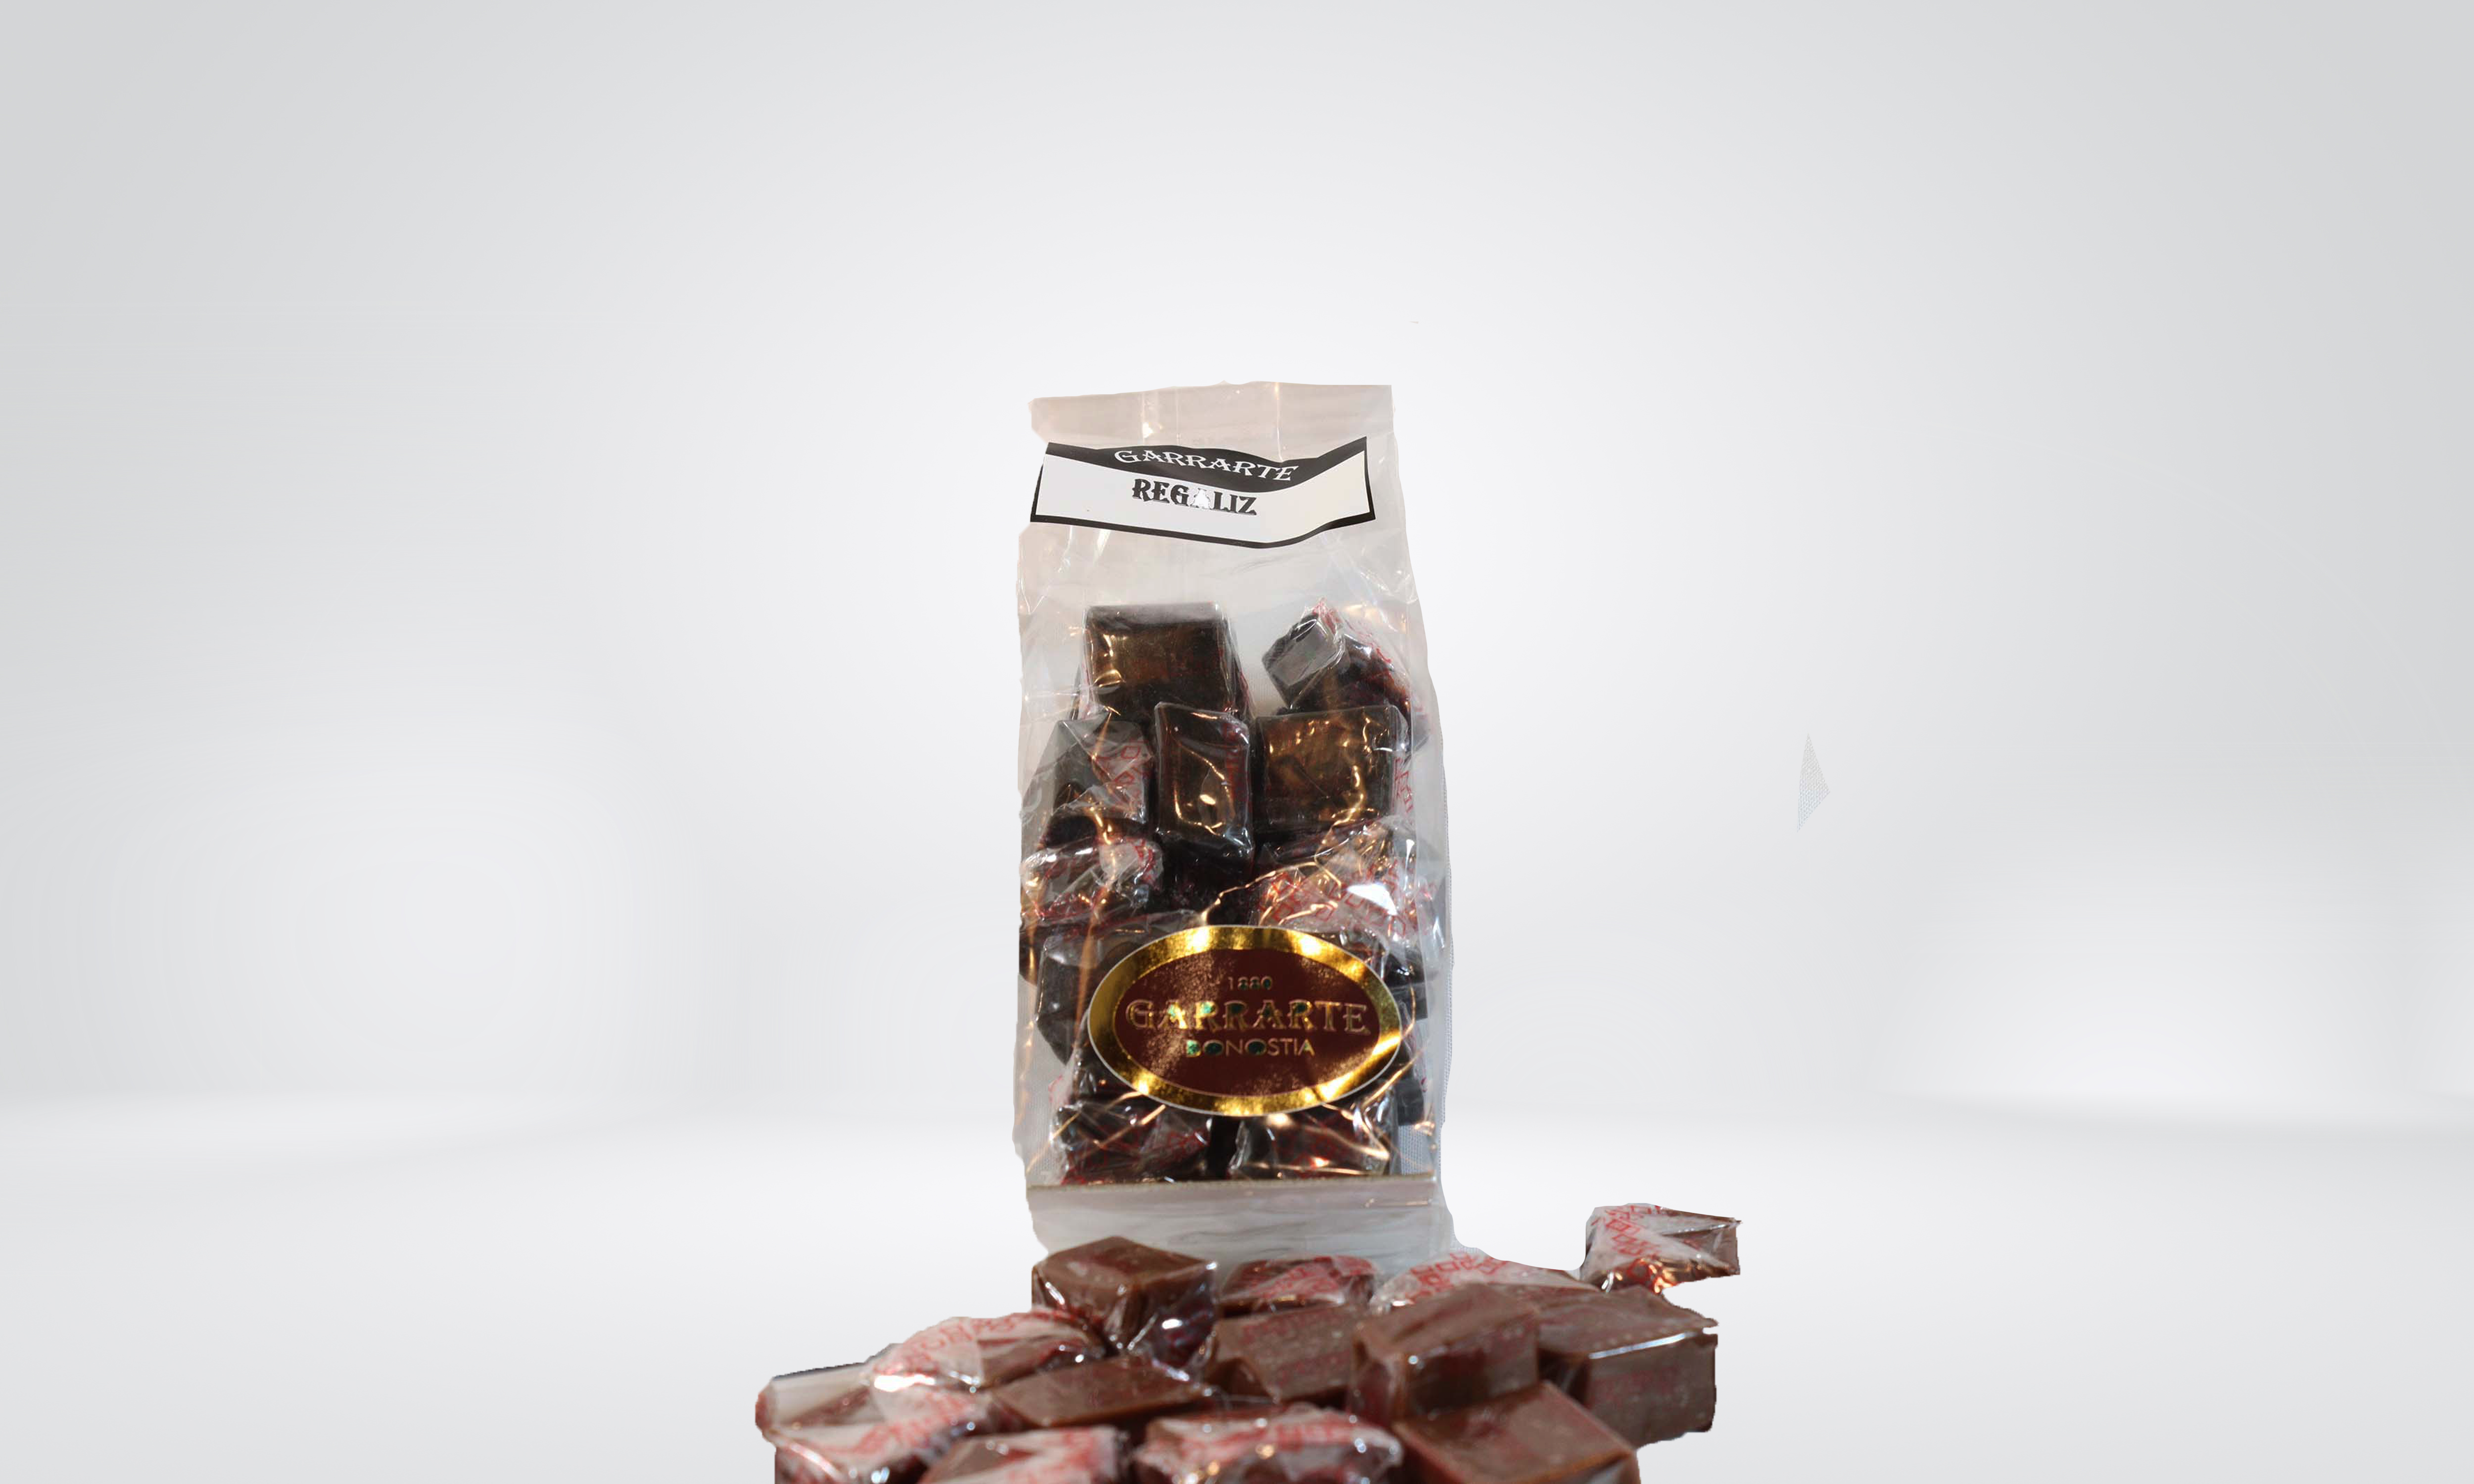 Puros de chocolate – Dulces Garrarte Donostia